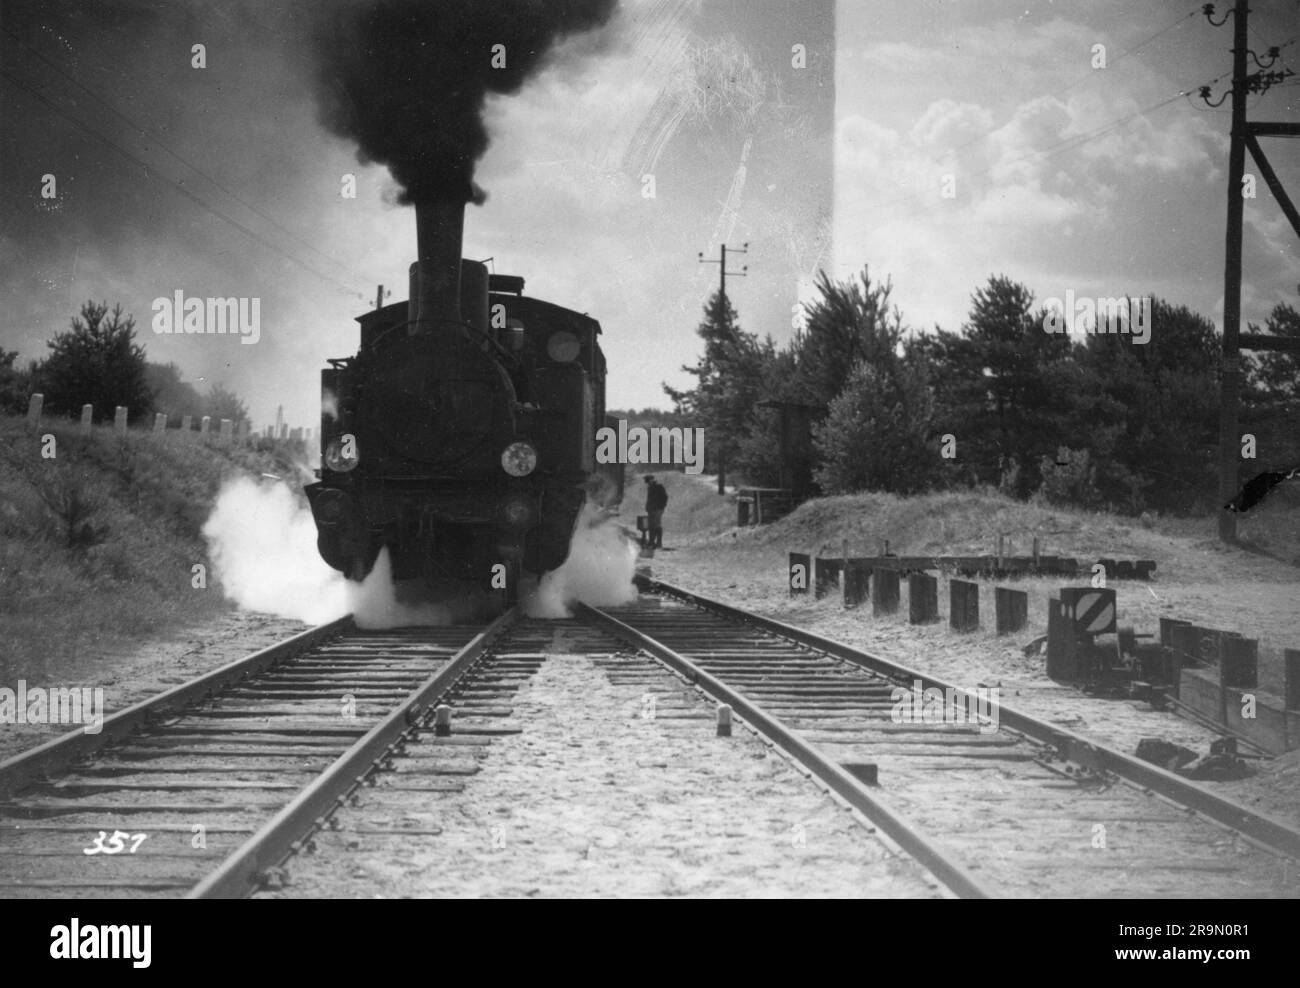 Trasporti/trasporti, ferrovie, locomotive, locomotive a vapore della classe 89 della Reichsbahn, SOLO PER USO EDITORIALE Foto Stock